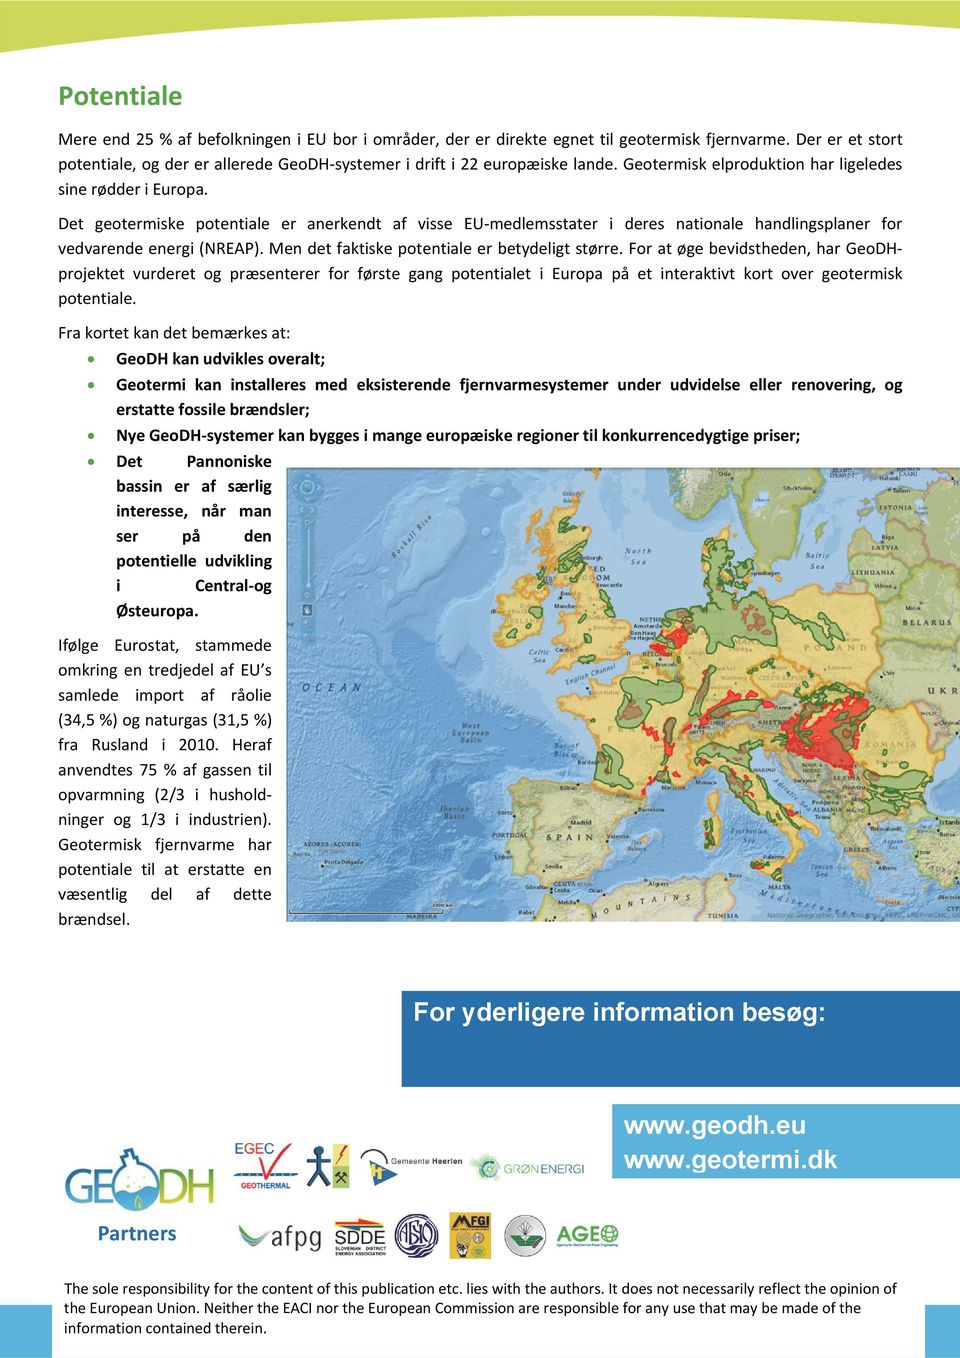 Det geotermiske potentiale er anerkendt af visse EU medlemsstater i deres nationale handlingsplaner for vedvarende energi (NREAP). Men det faktiske potentiale er betydeligt større.